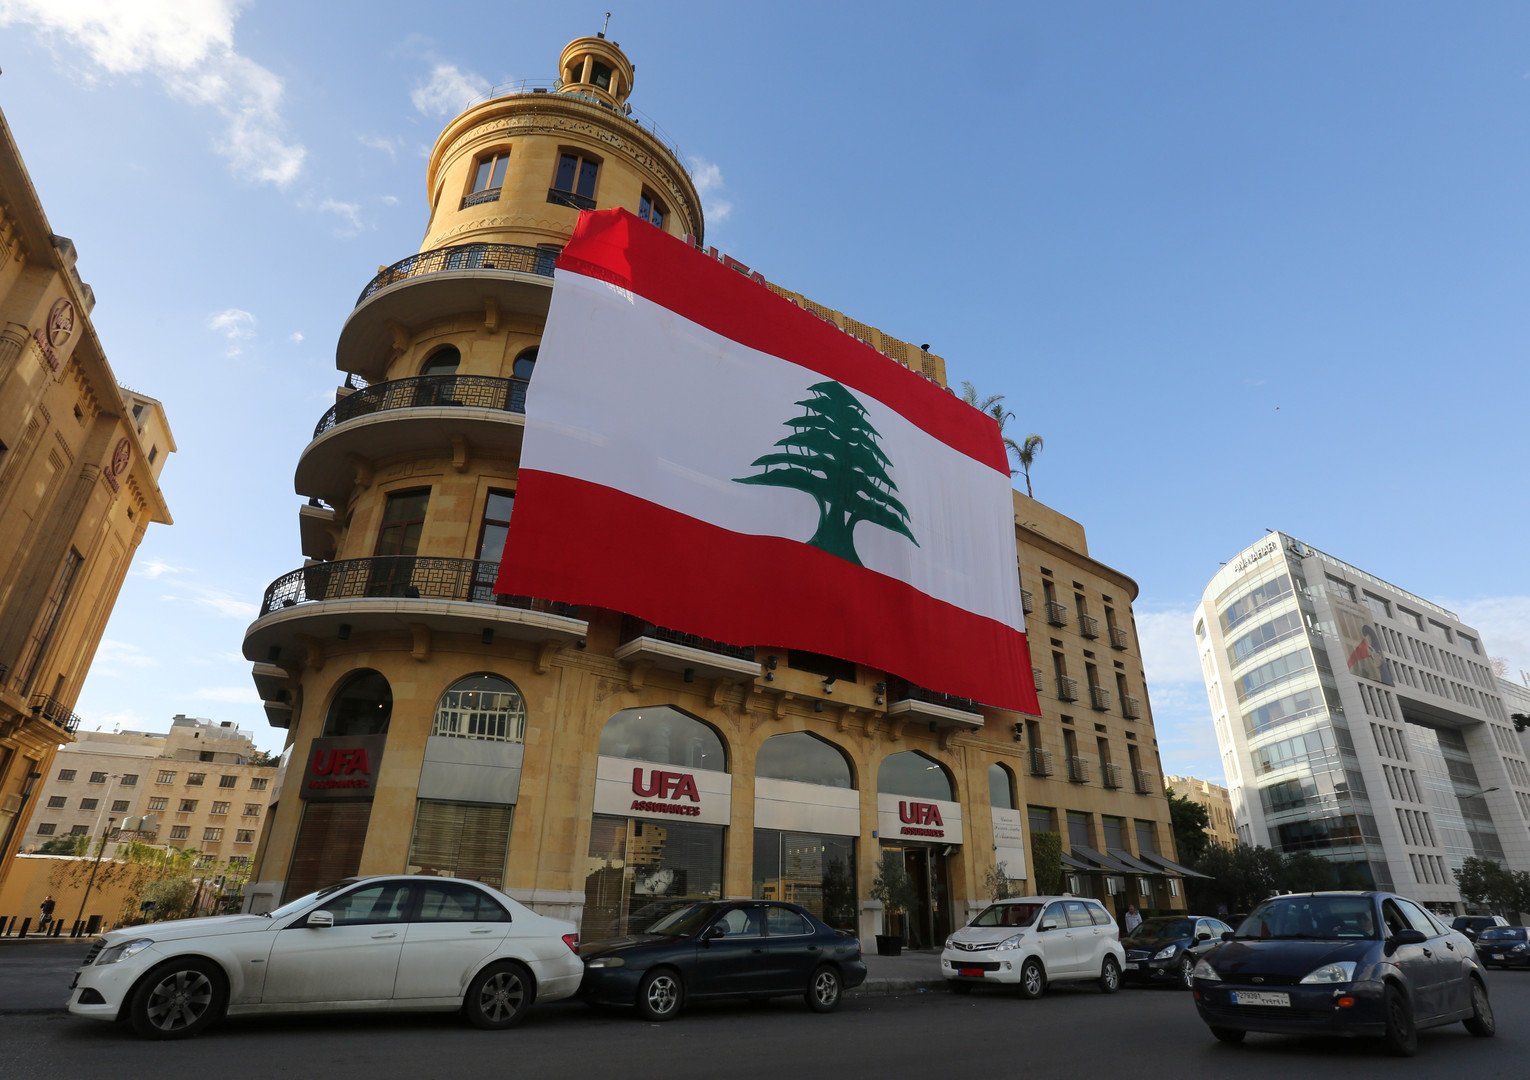 صحيفة عريقة في لبنان تحتج على الوضع السياسي والاقتصادي بطريقة لافتة